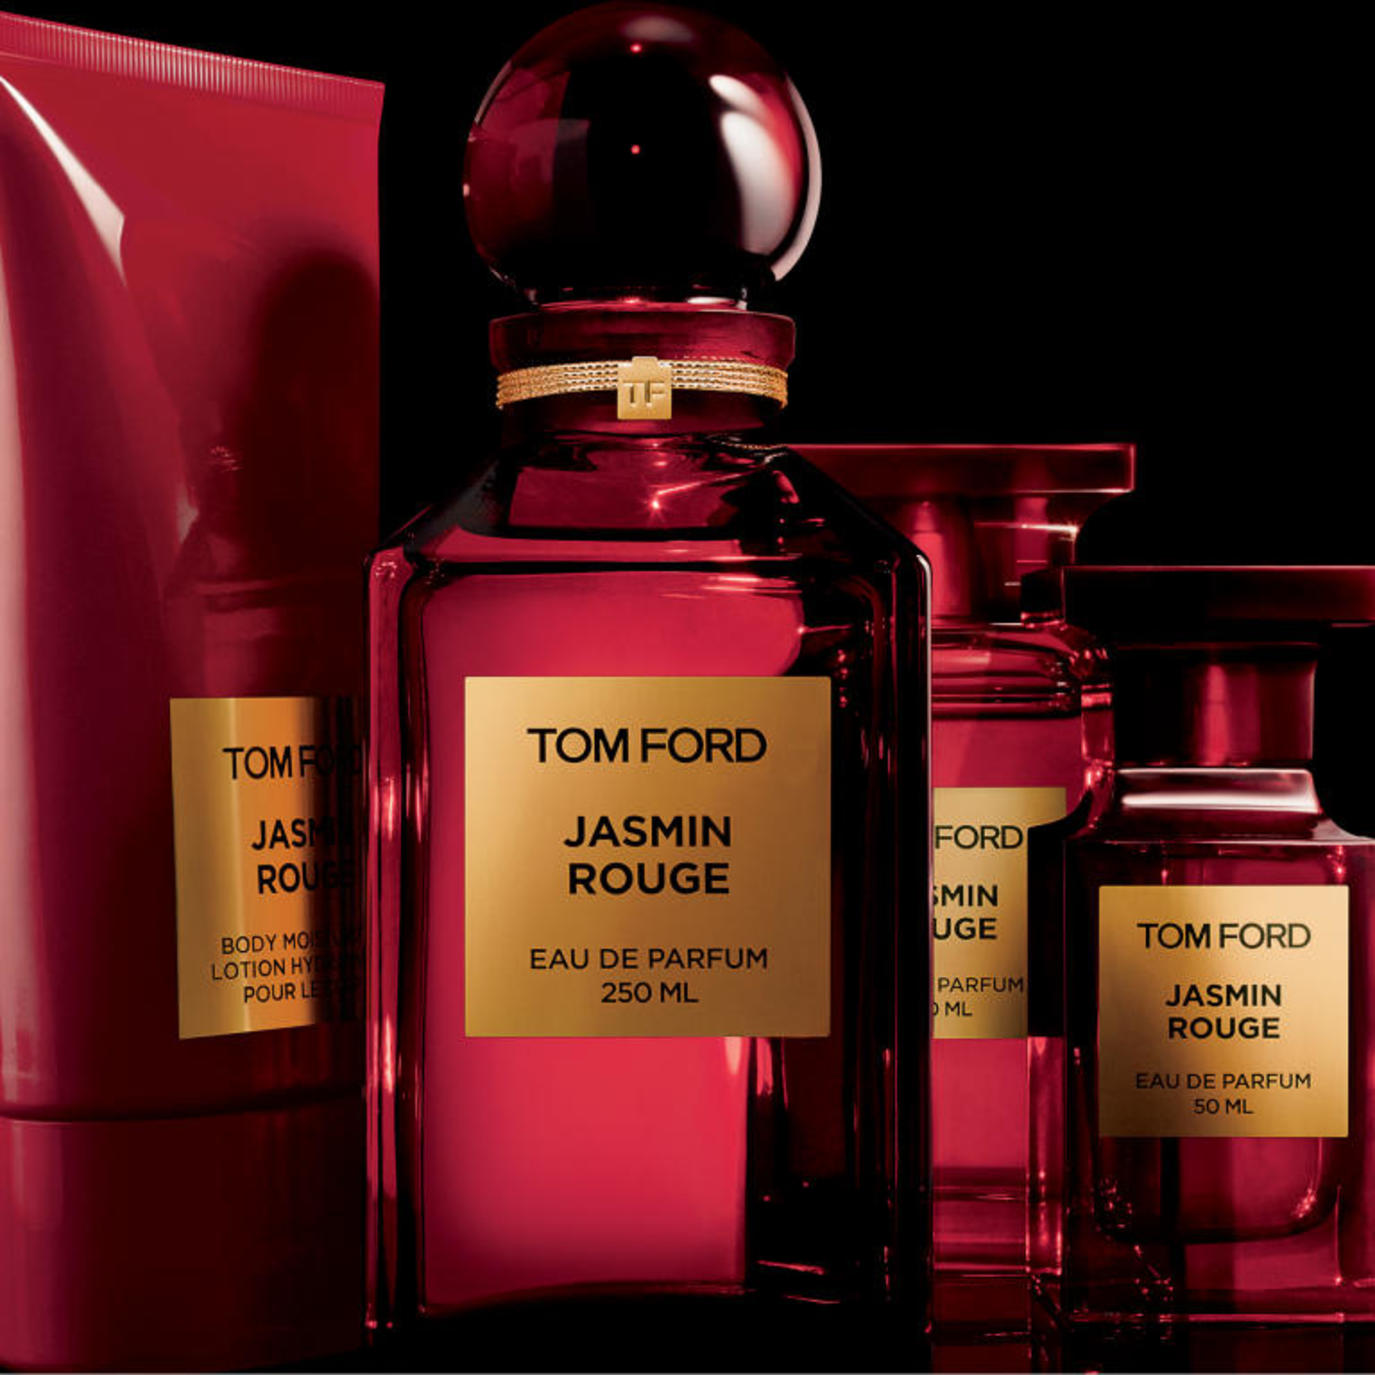 Том форт оригинал. Tom Ford jasmin rouge 100 ml. Tom Ford jasmin rouge 50 ml. Tom Ford jasmin rouge 100 мл. Духи Tom Ford jasmin rouge.